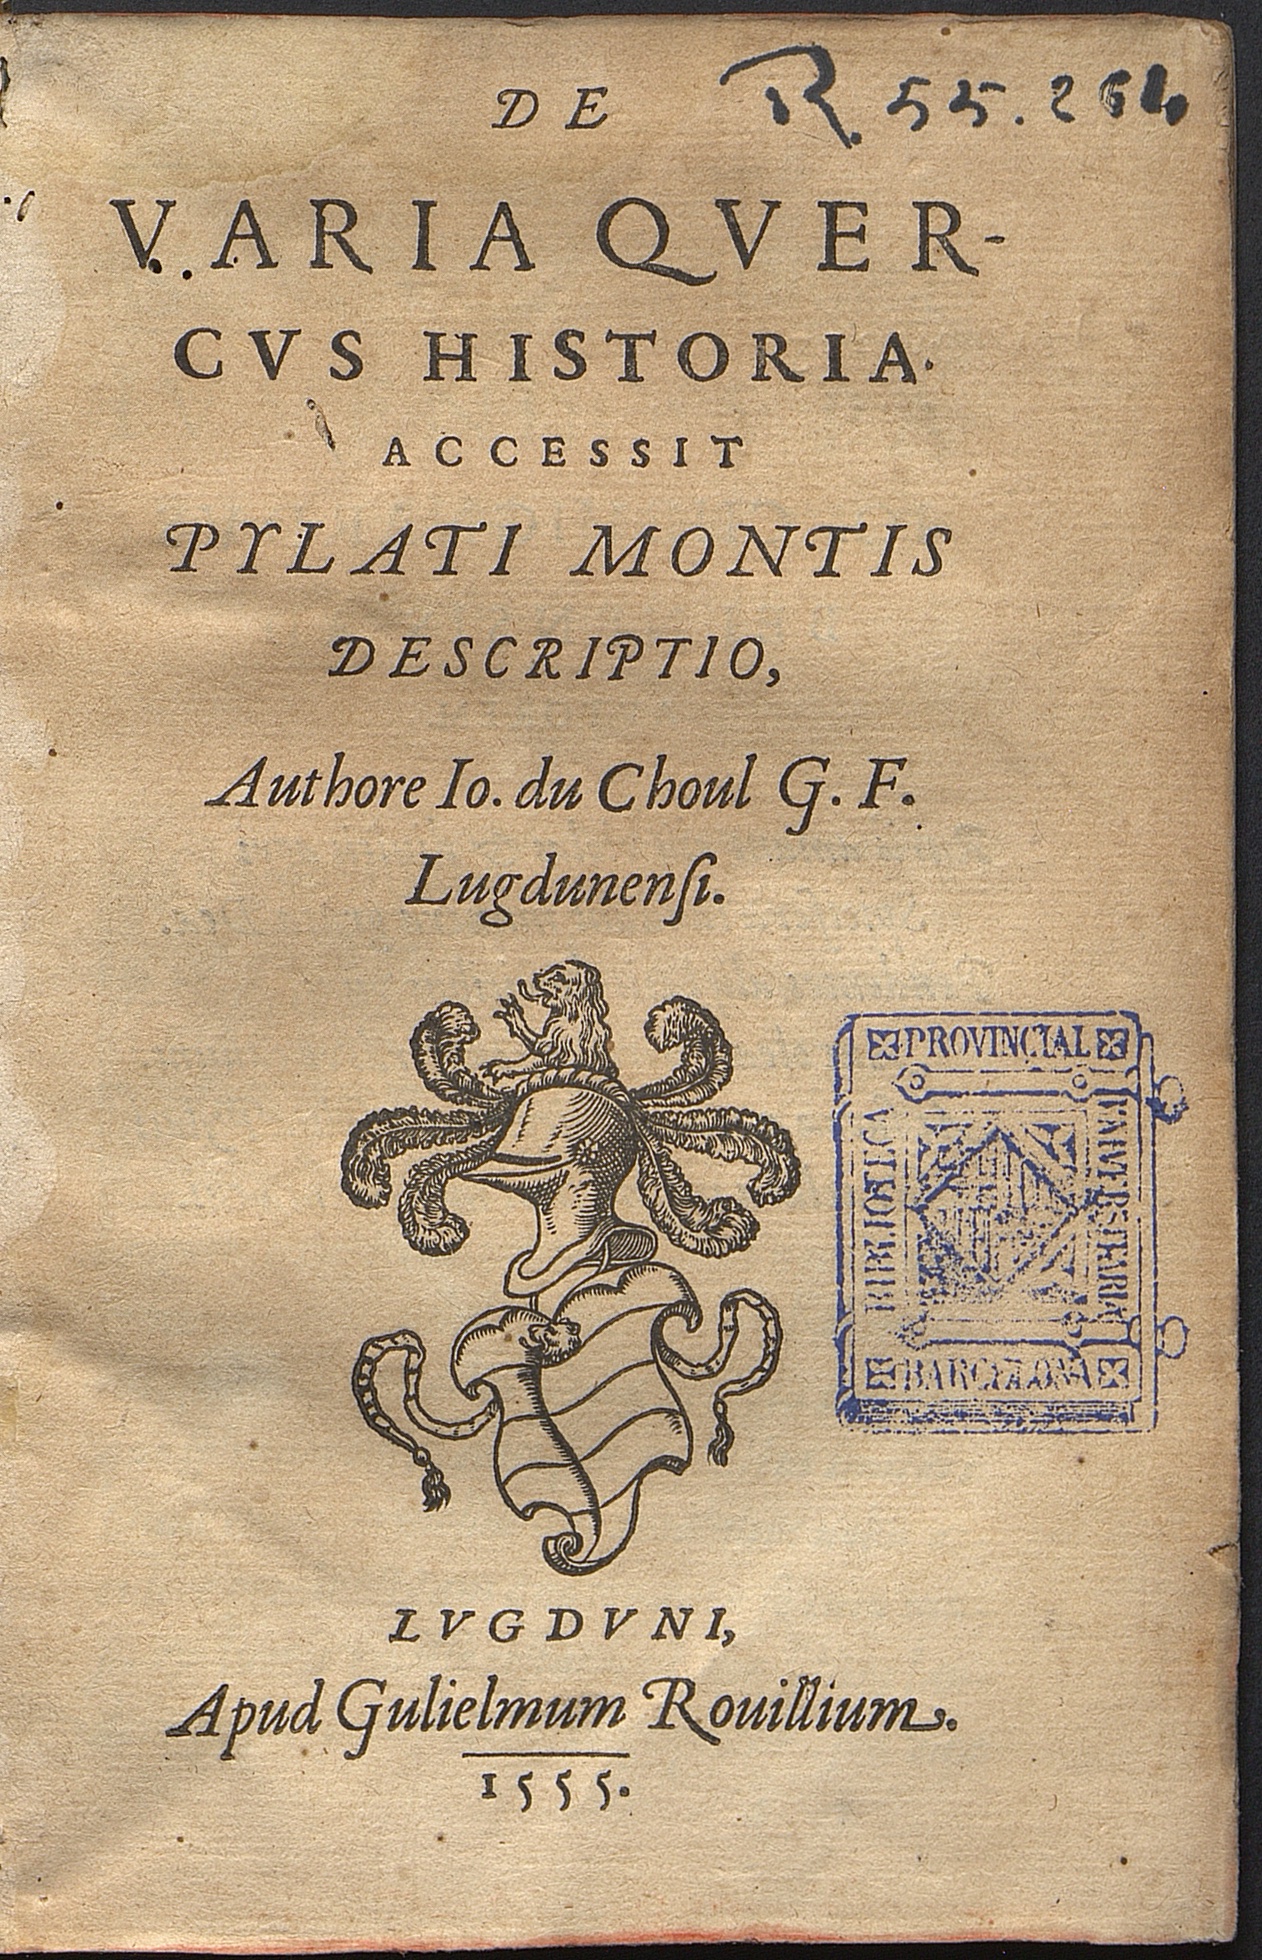 De varia quercus historia : accessit Pylati Montis descriptio